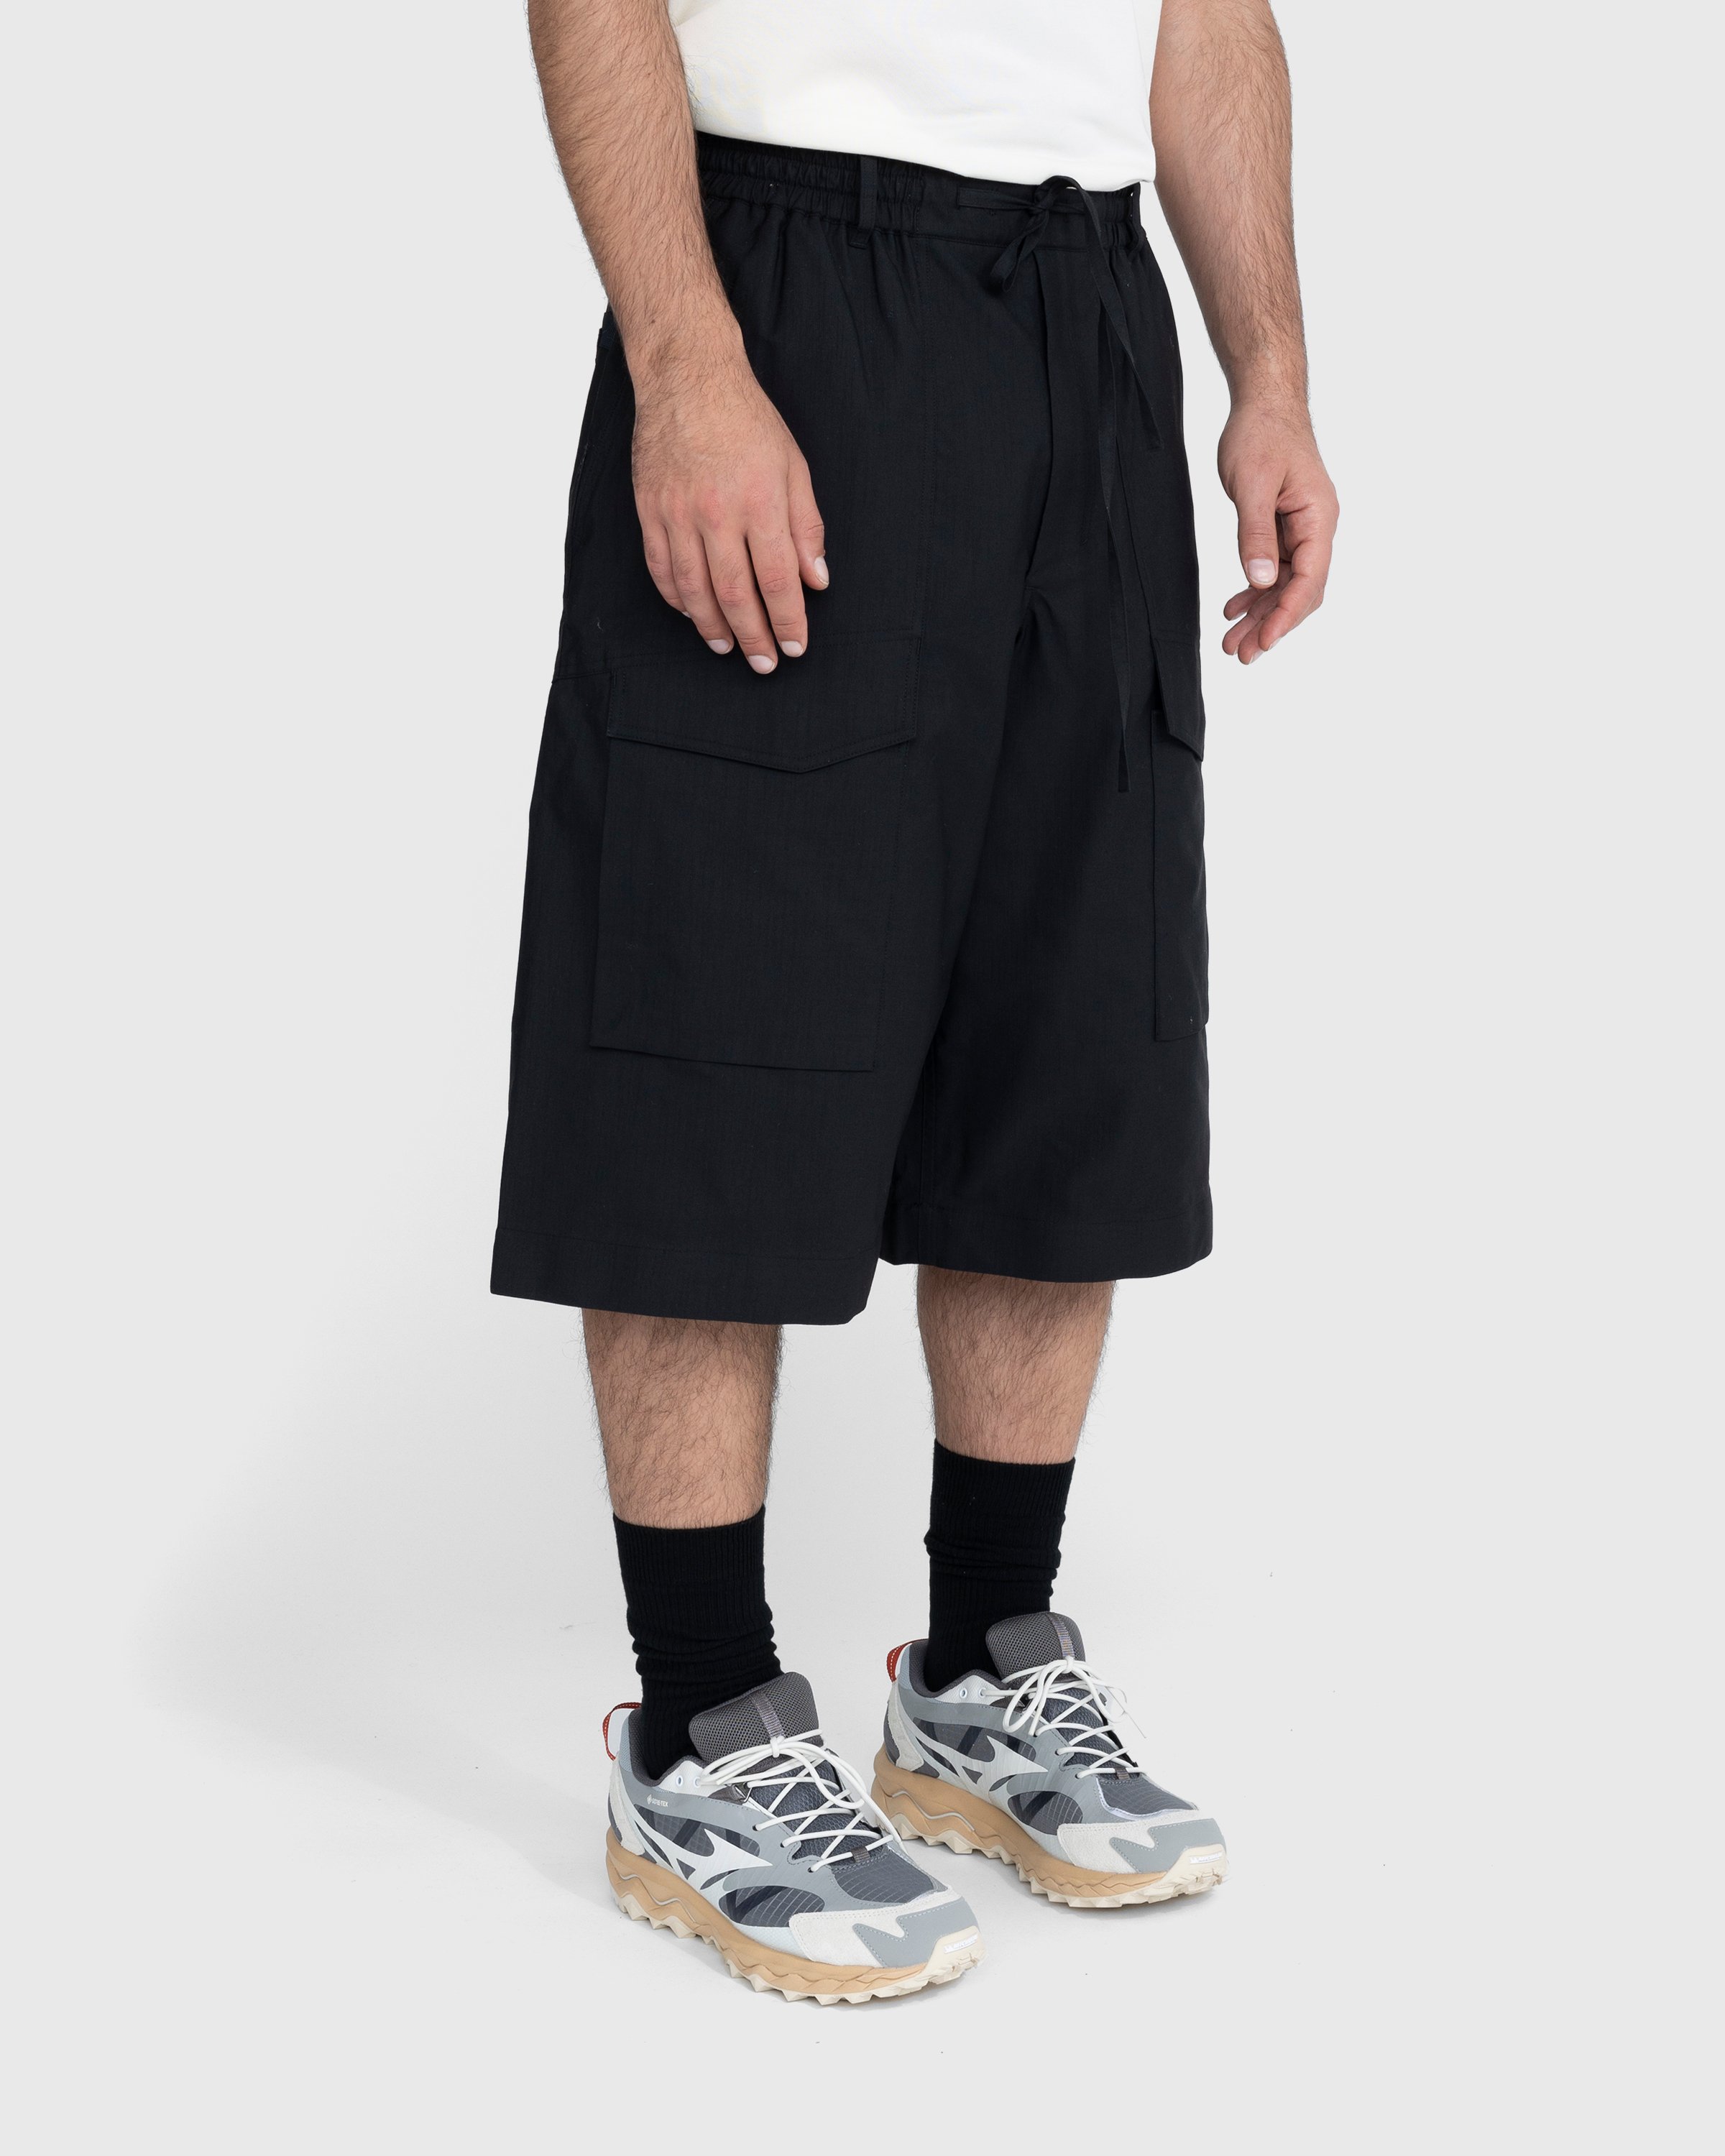 Y-3 - Workwear Shorts Black - Clothing - Black - Image 4